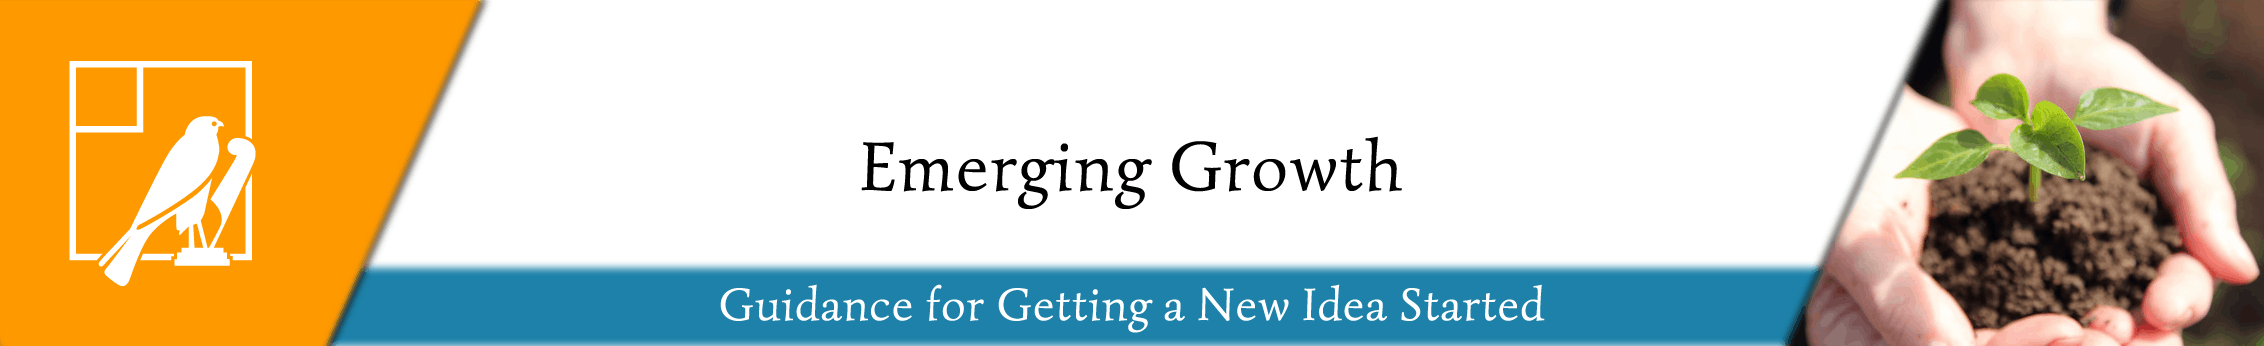 FDA Emerging Growth